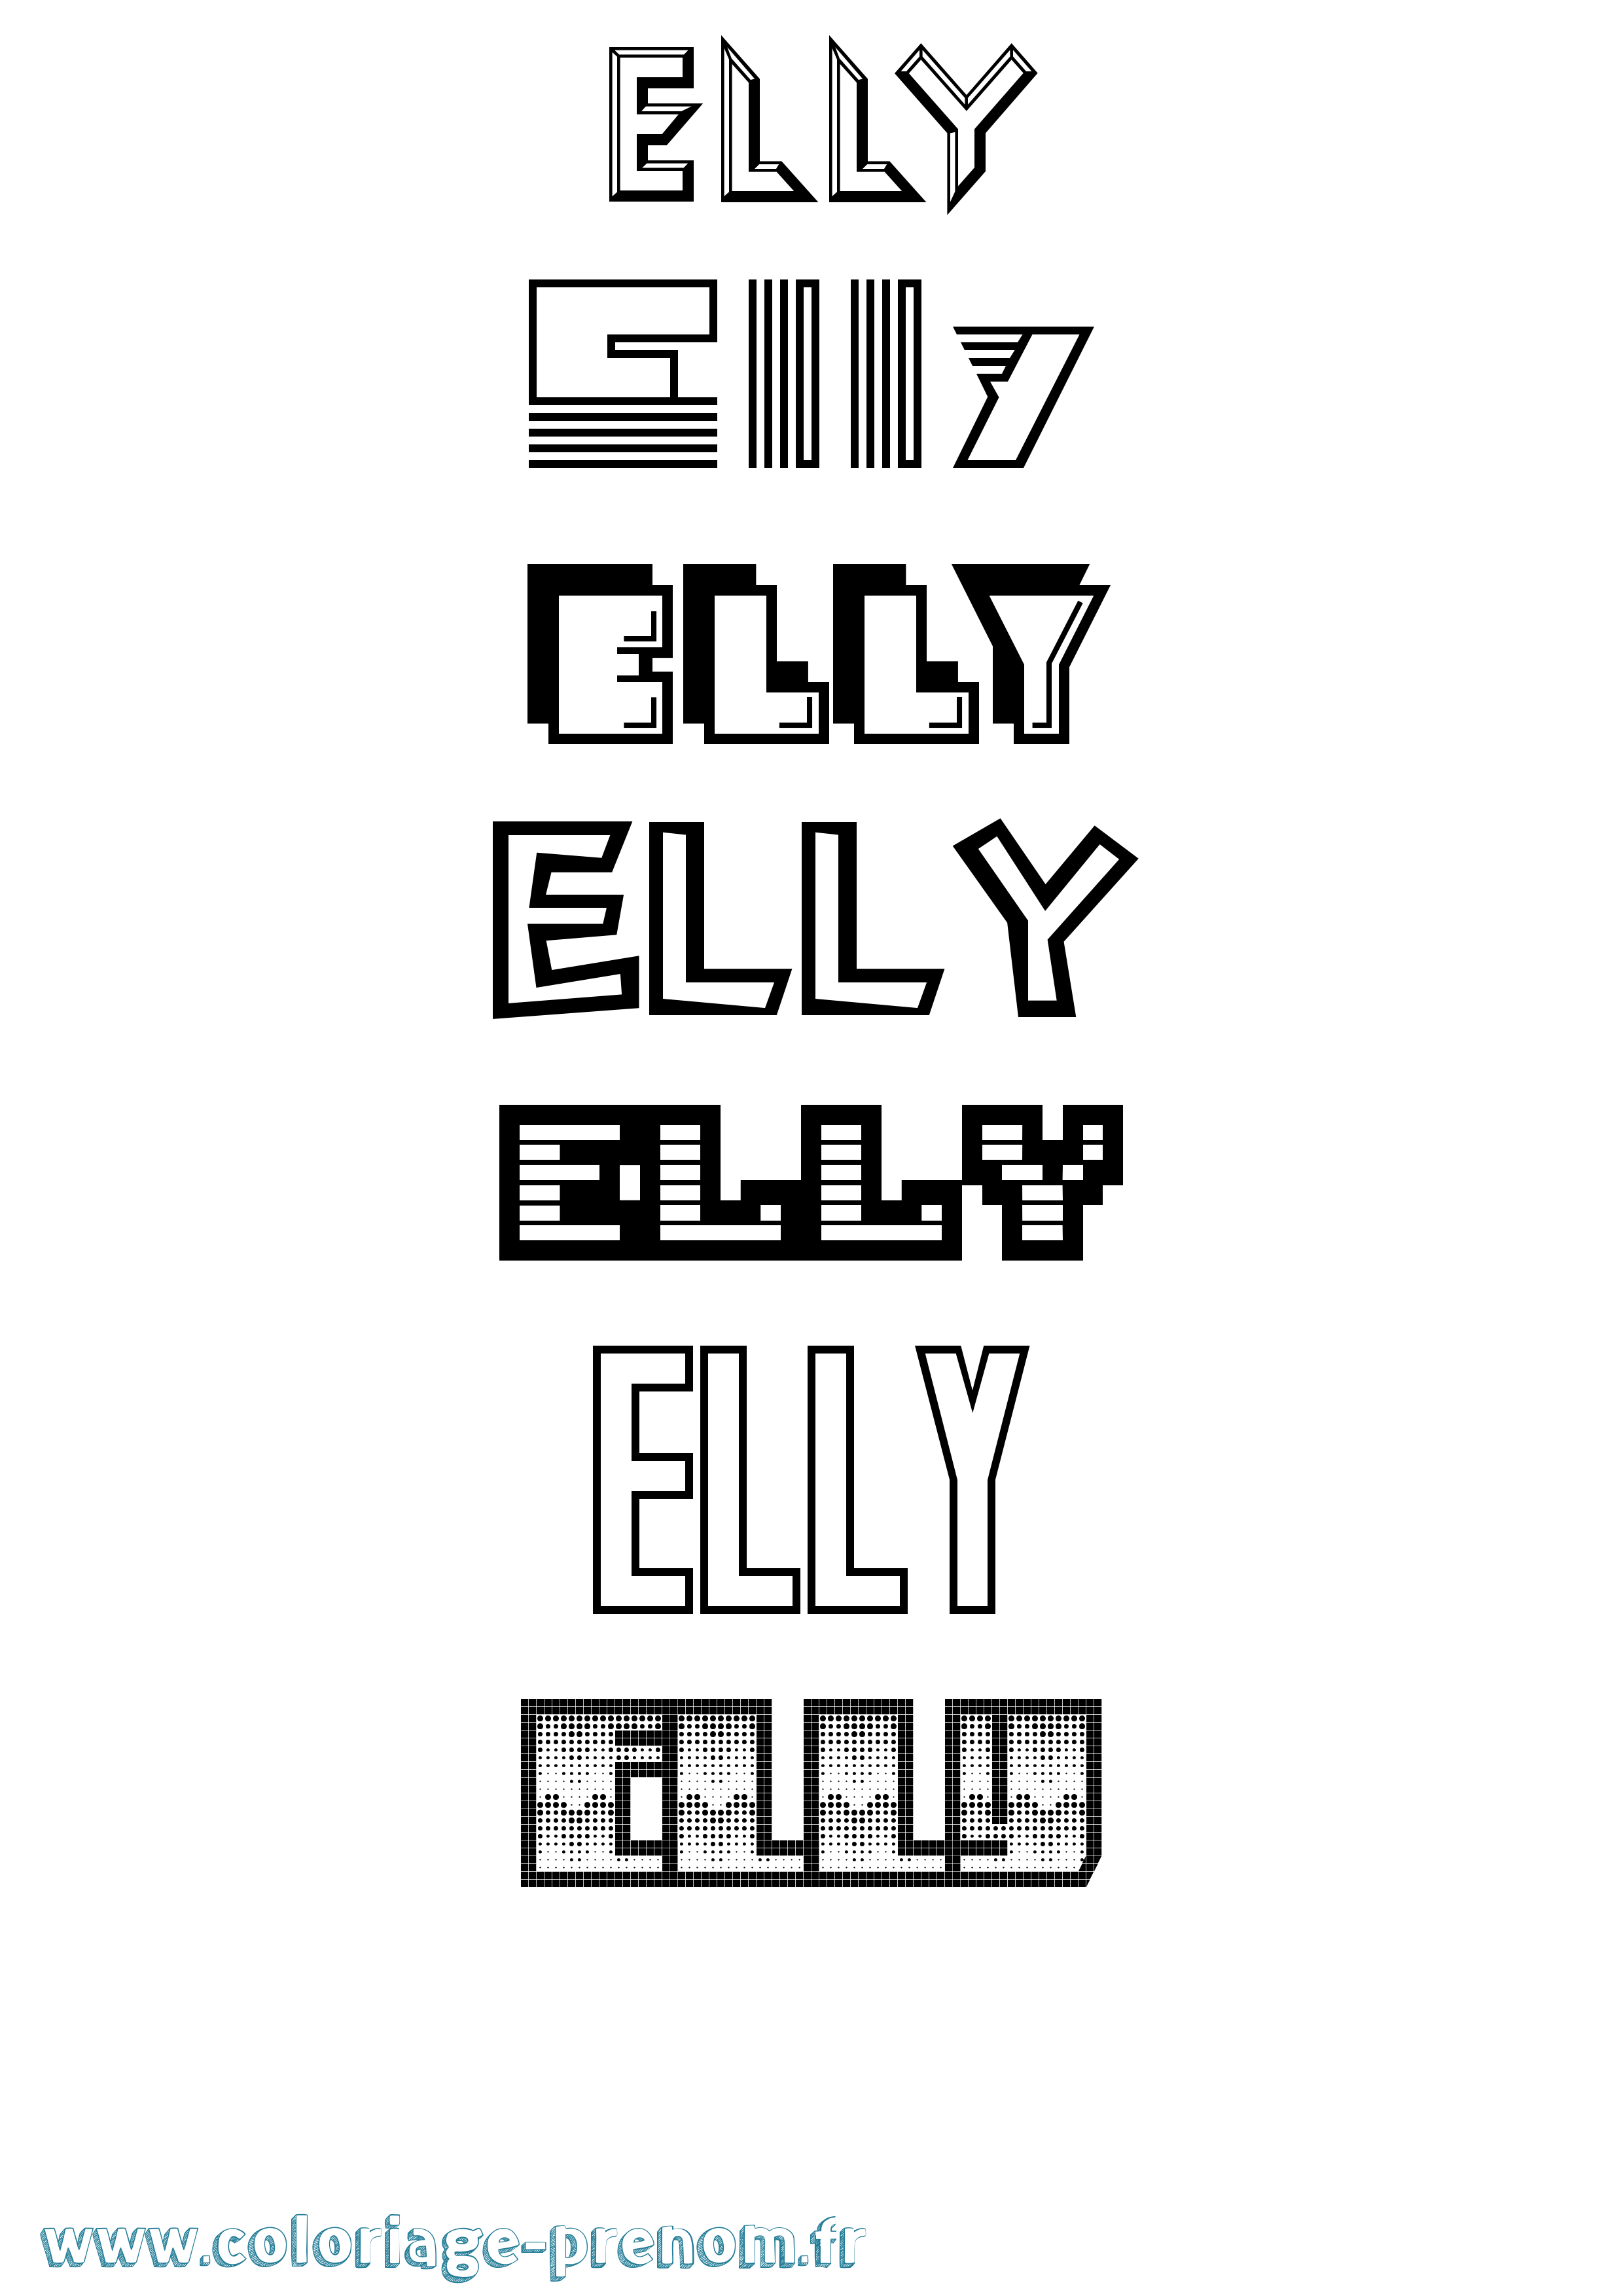 Coloriage prénom Elly